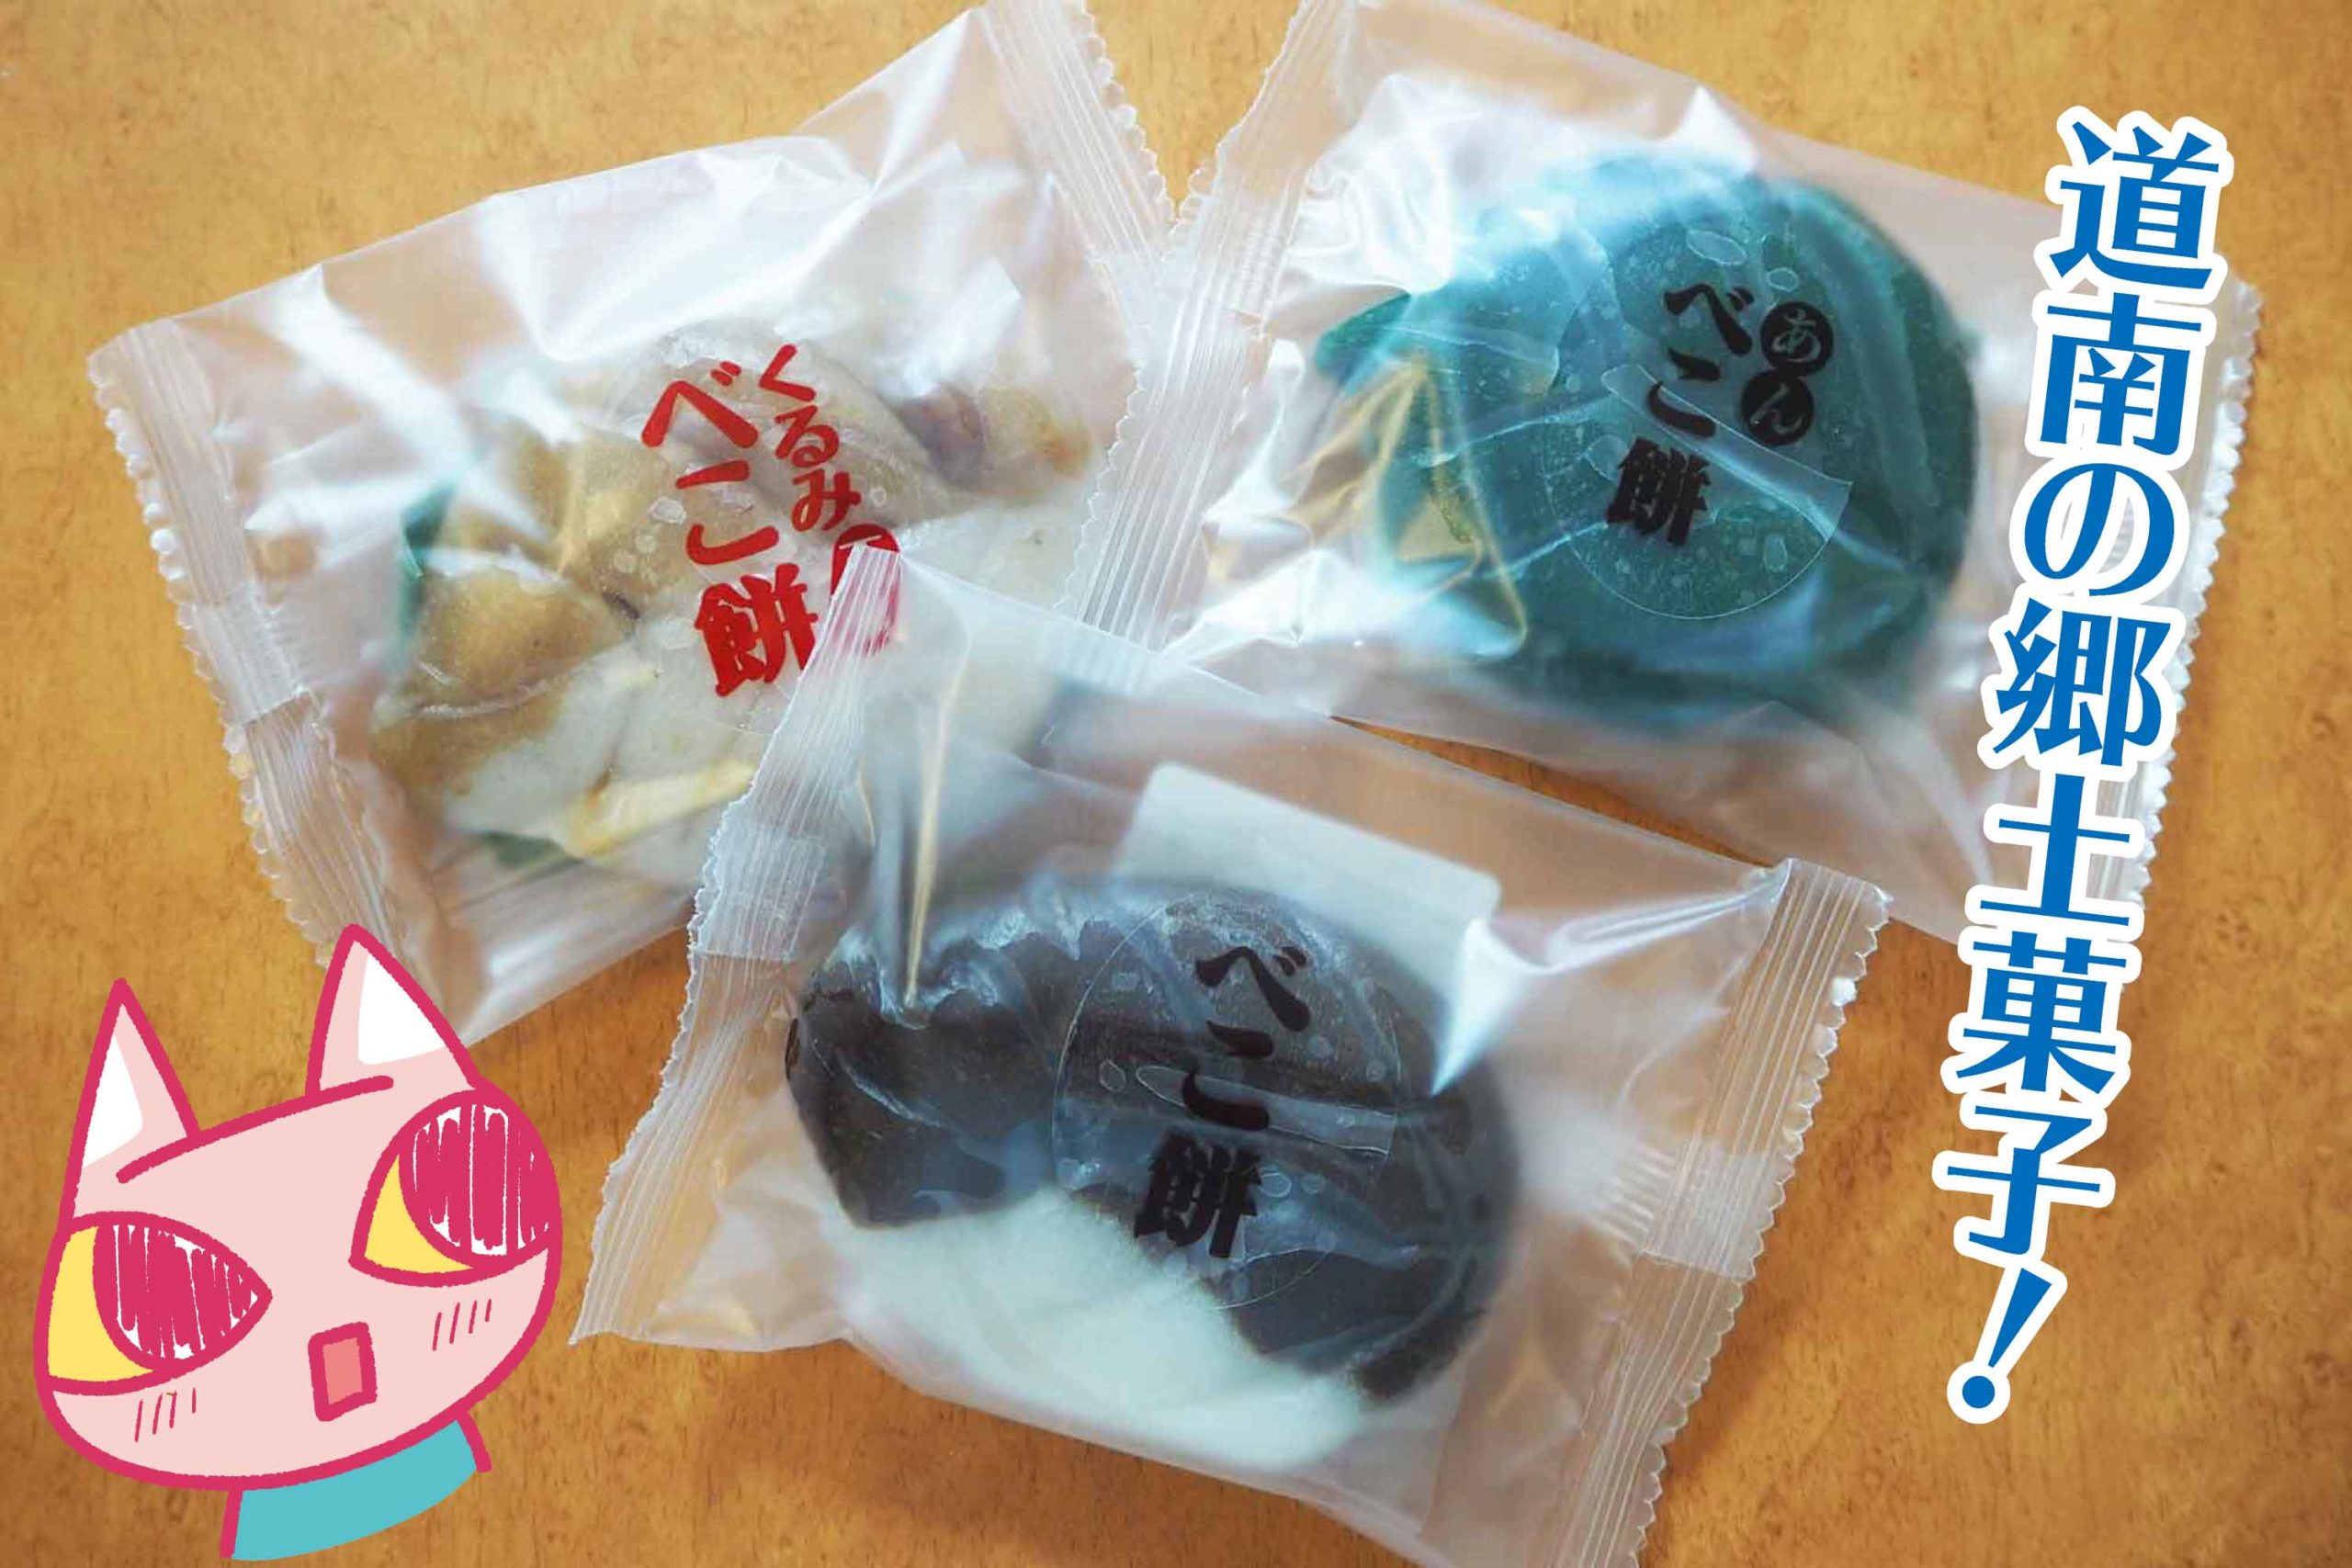 北海道の伝統菓子「べこ餅」 素朴で優しい味わいが懐かしさ満載 – fumumu